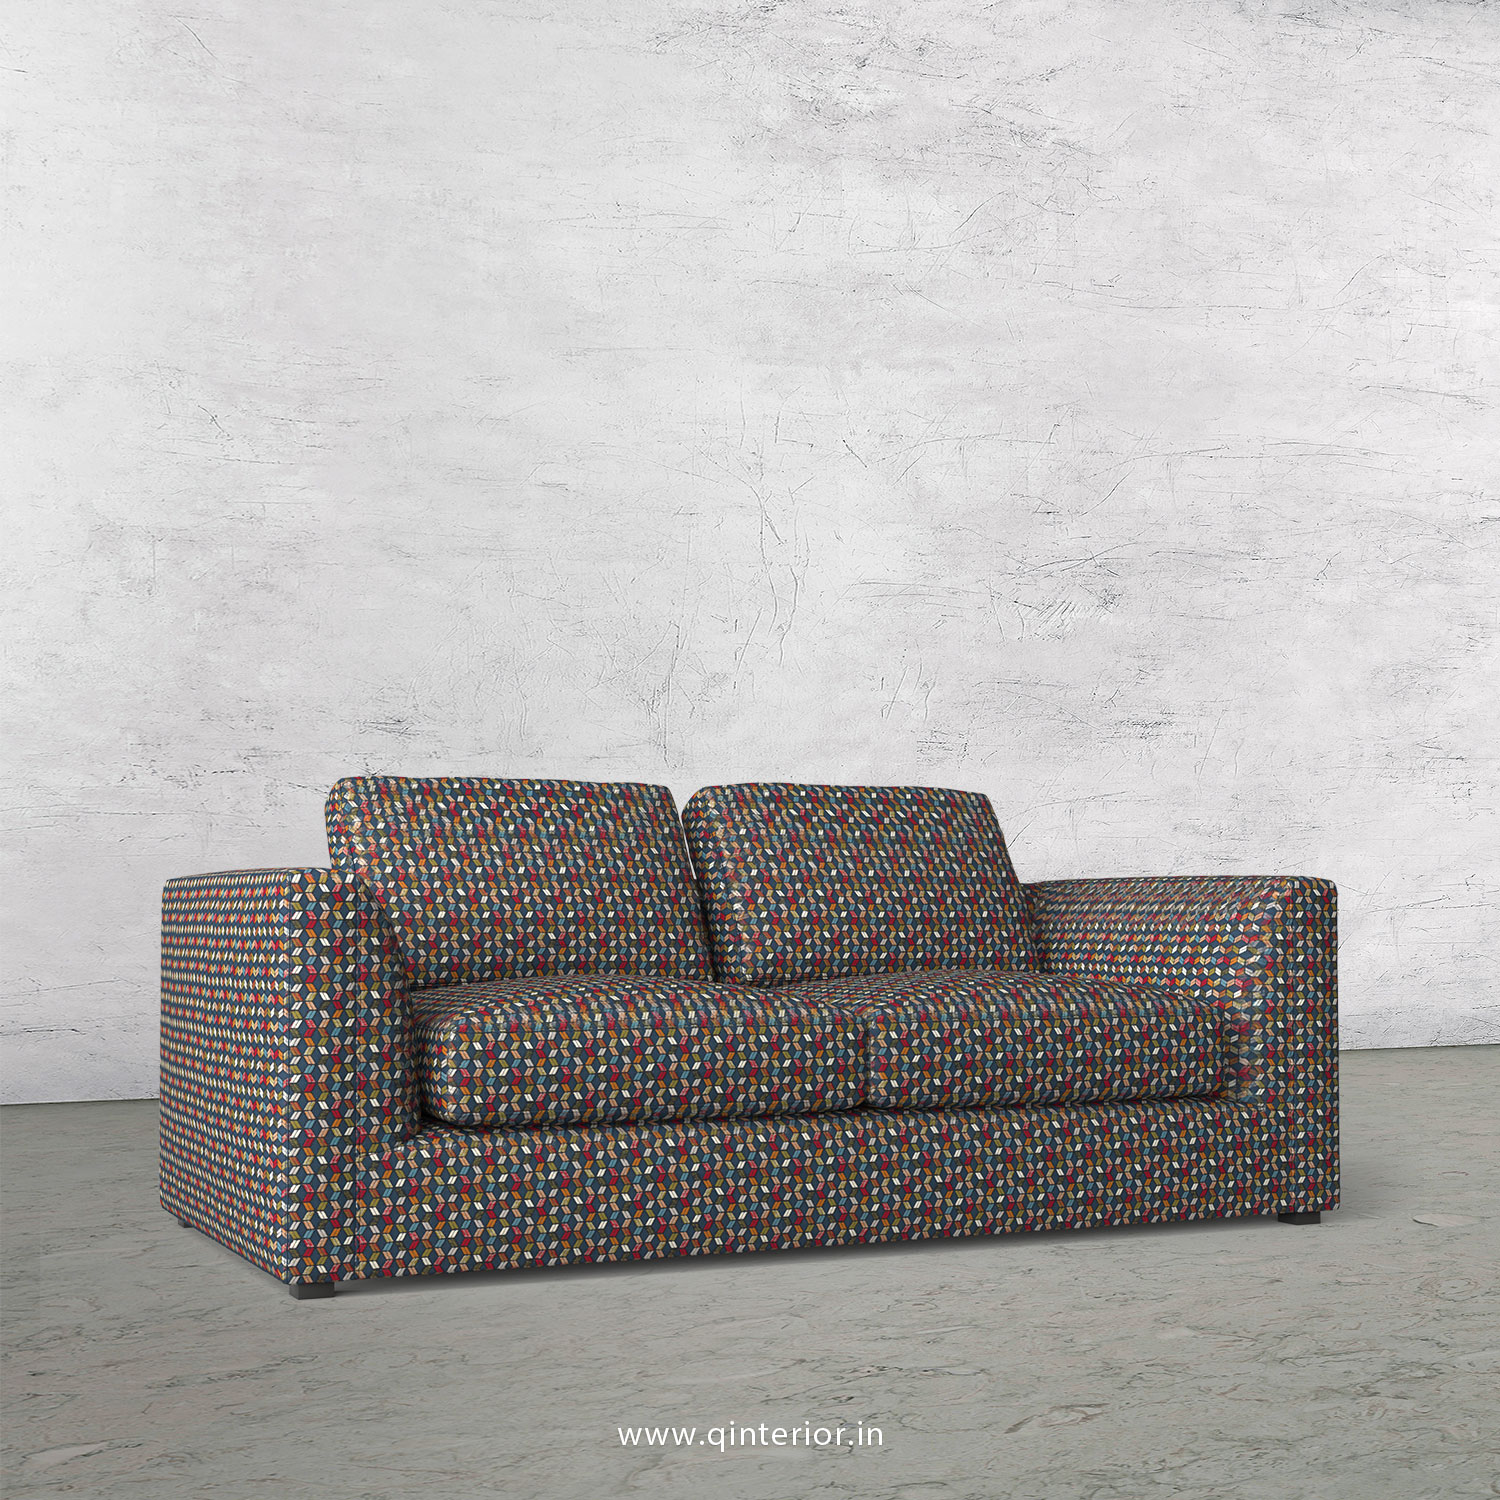 IRVINE 2 Seater Sofa in Bargello Fabric - SFA003 BG04